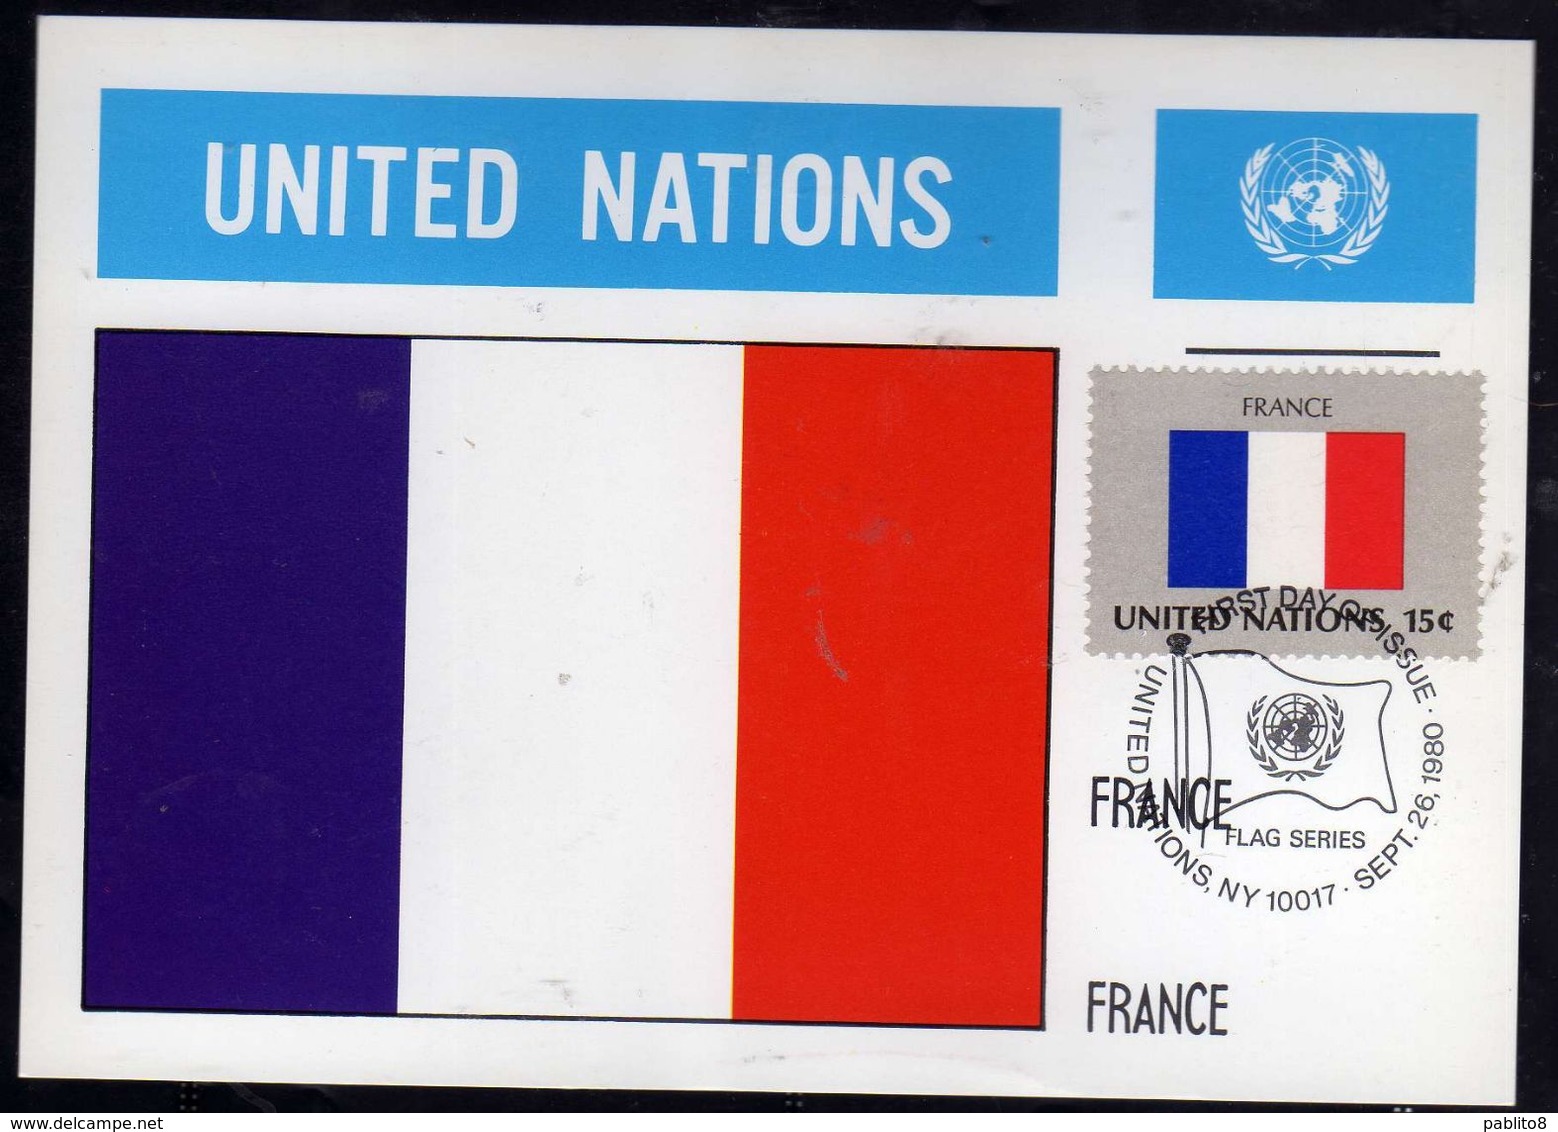 UNITED NATIONS NEW YORK ONU UN UNO 26 9 1980 FLAGS FRANCE FRANCIA FDC MAXI CARD CARTOLINA MAXIMUM - Maximumkaarten